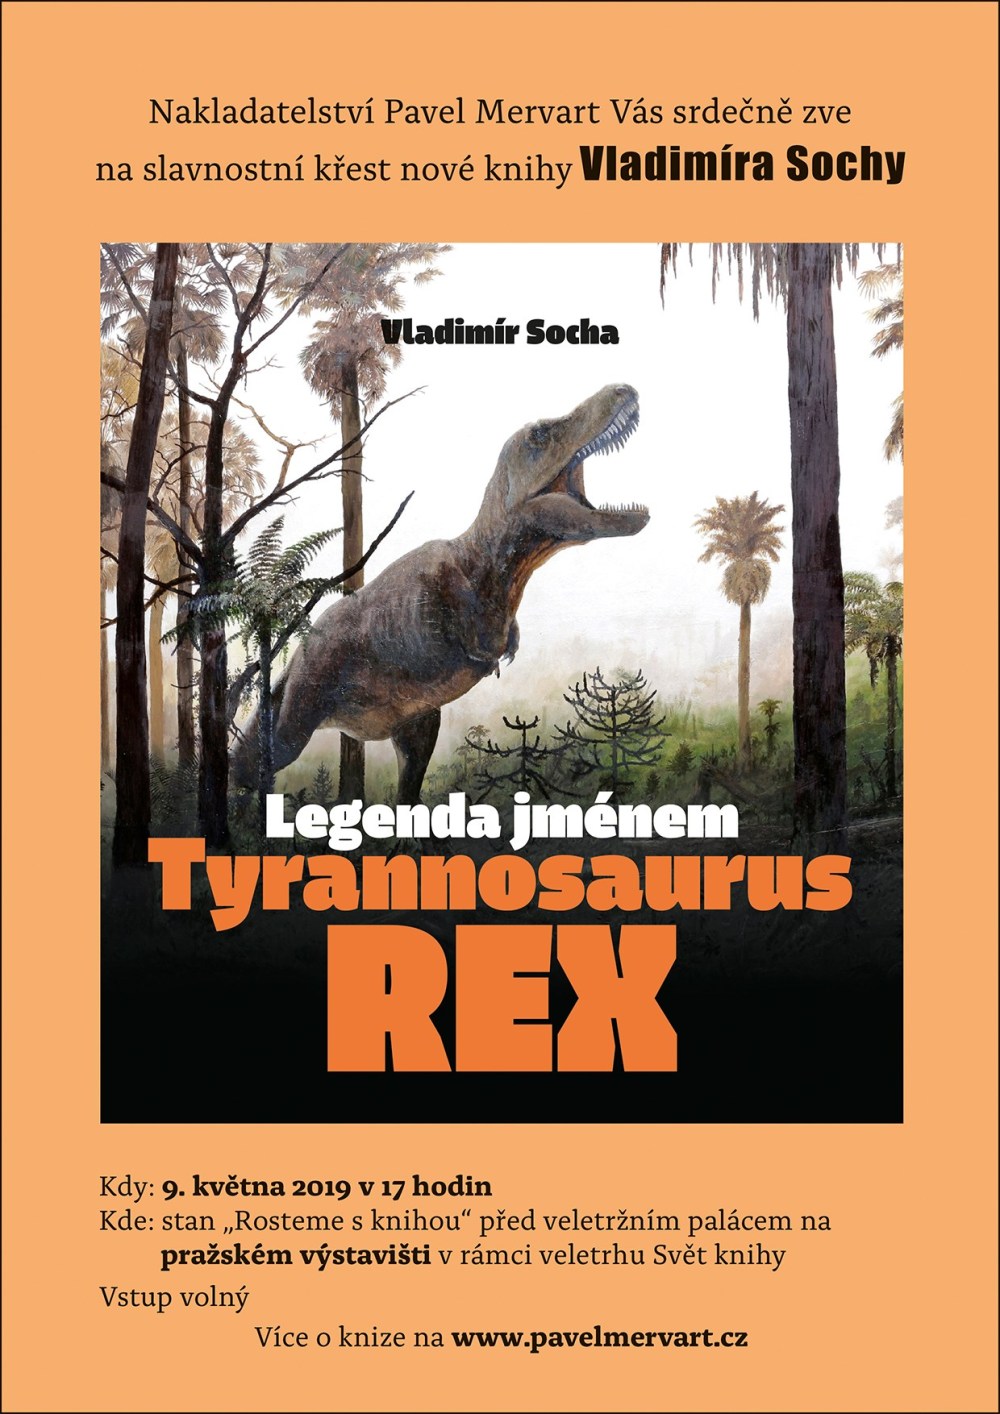 Autogramiáda knihy Legenda jménem Tyrannosaurus rex proběhne 9. května od 17 hodin v rámci veletrhu Svět knihy na pražském výstavišti a 13. května od 17 hodin na Hlavním nádraží v Pardubicích u knihkupectví Mozaika.